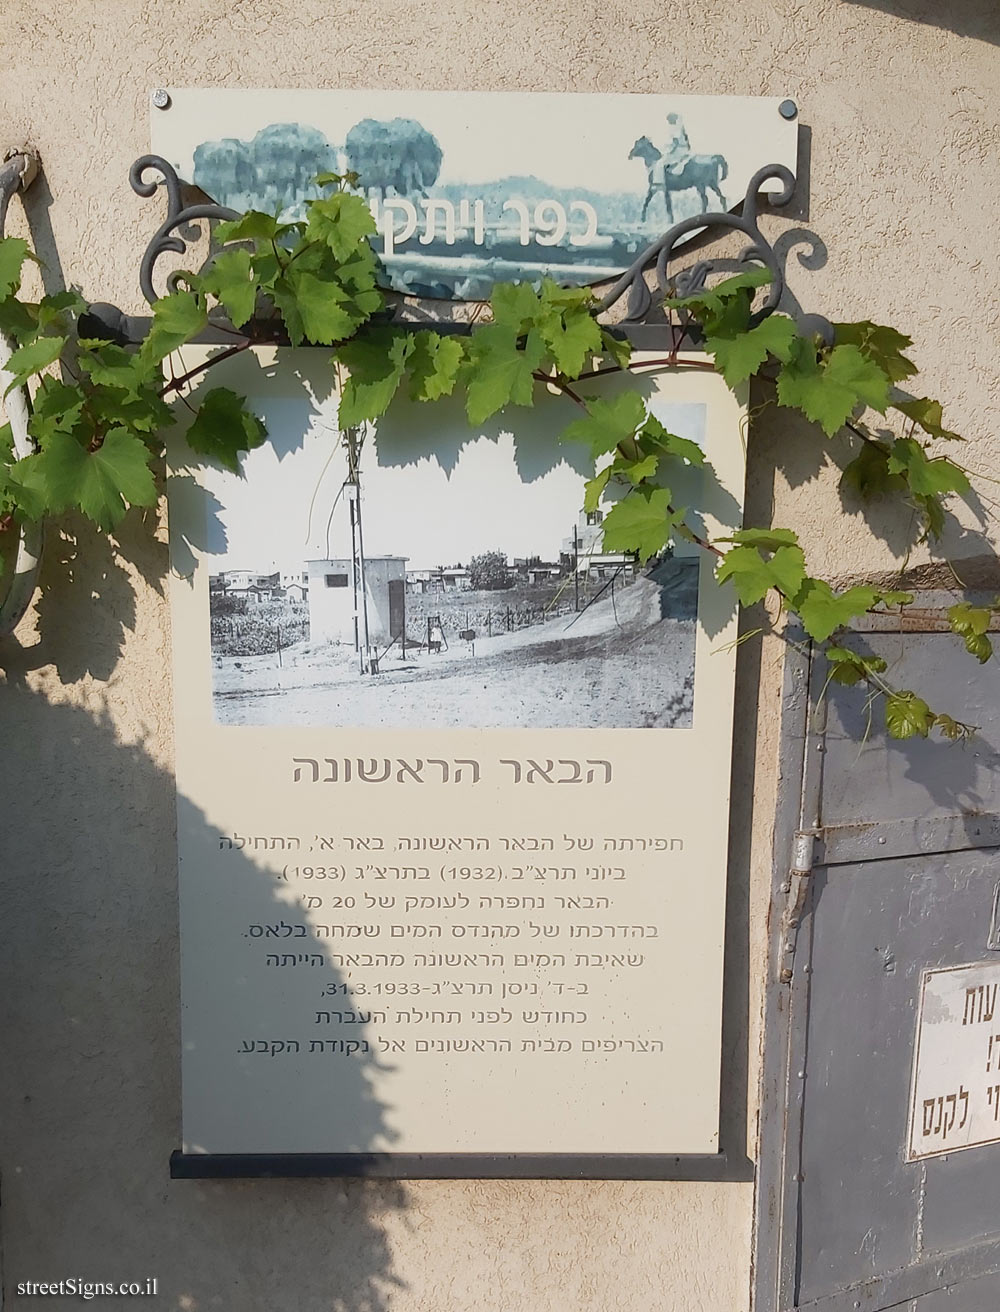 Kfar Vitkin - The first well